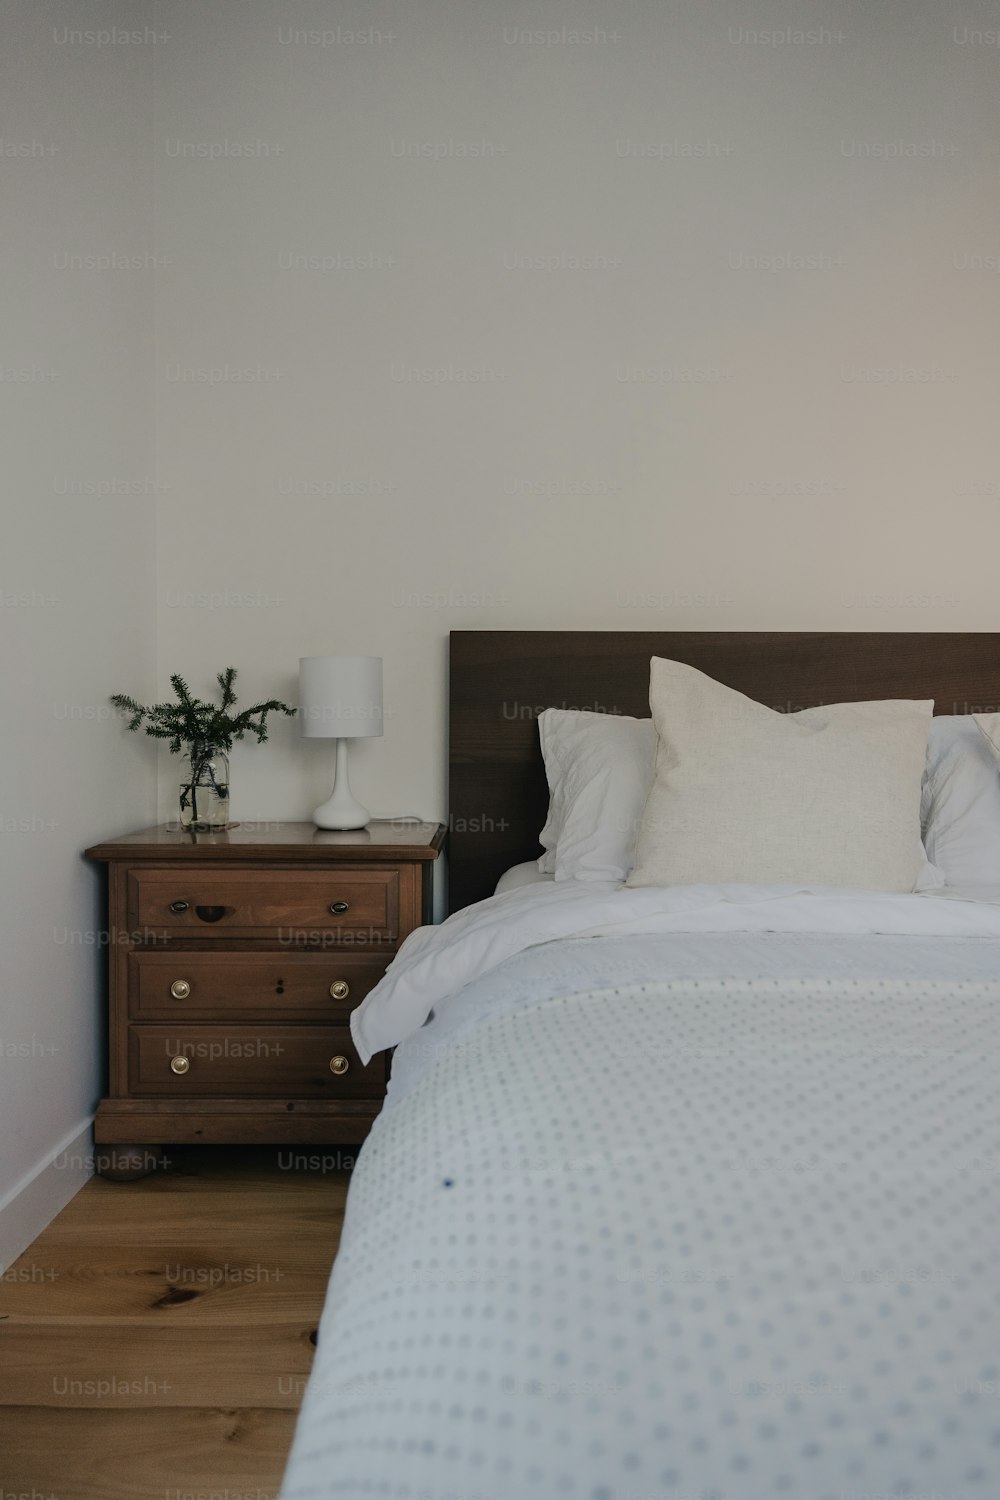 ein Bett mit weißer Bettwäsche und Kissen in einem Zimmer